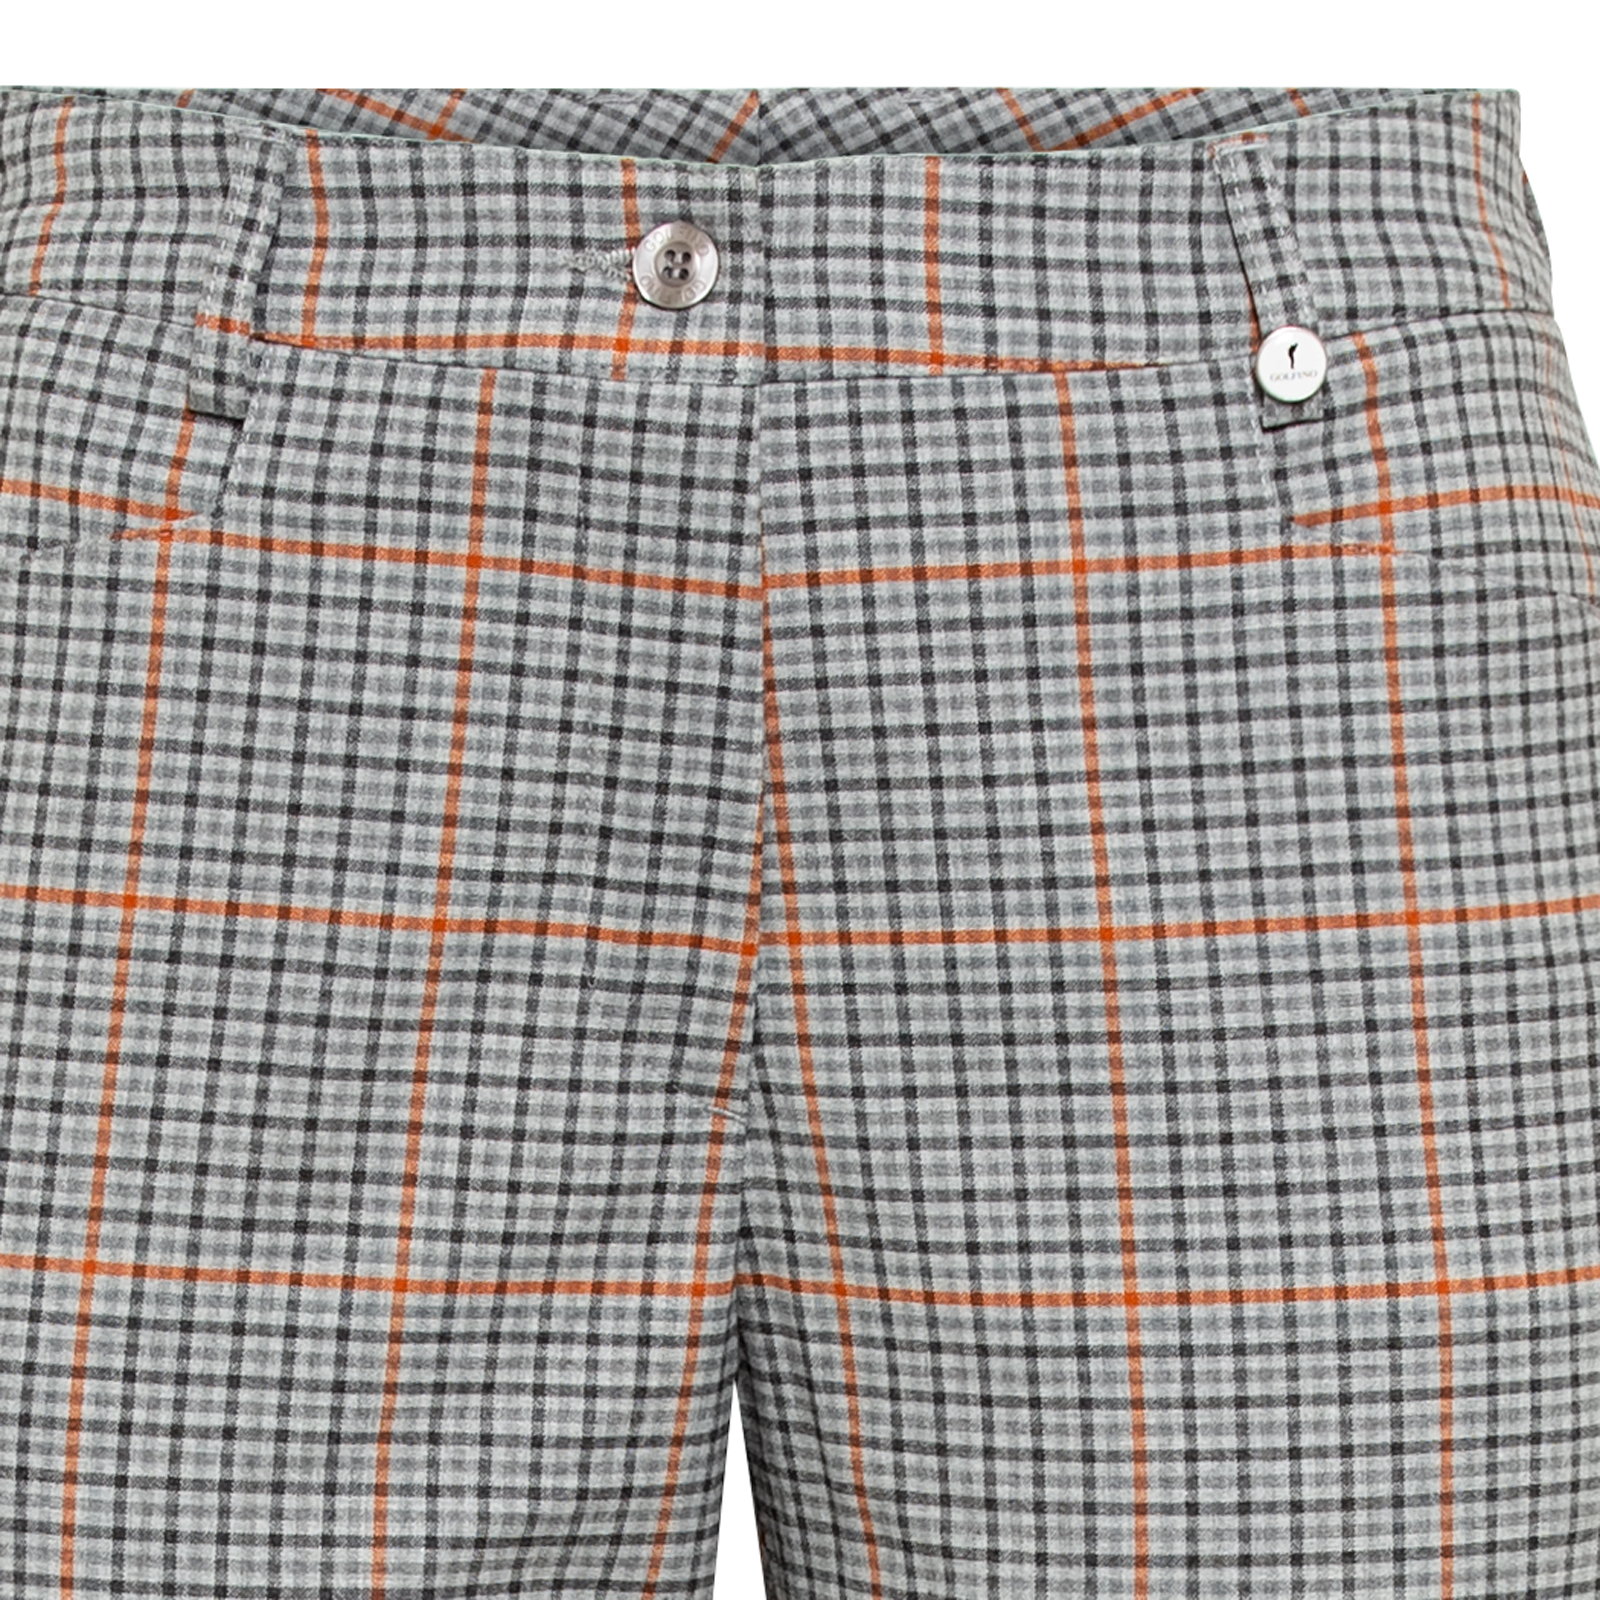 Pantalones de golf 7/8 a cuadros en tejido elástico con viscosa para mujer